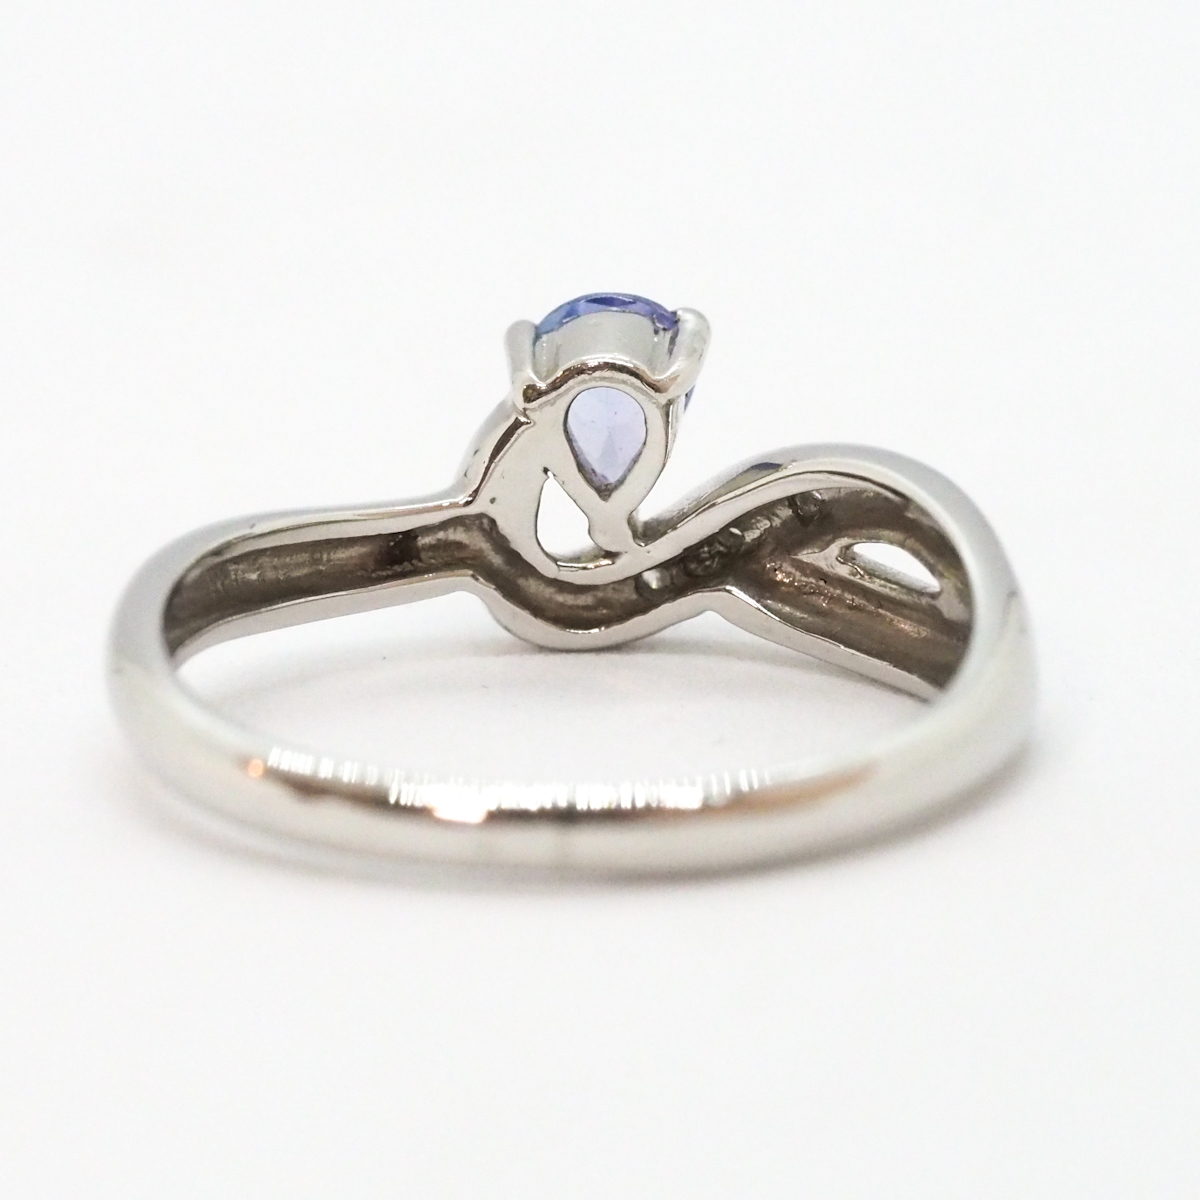 Pt900 цвет камень есть цветной камень mere бриллиант есть 0.02ct платина кольцо 13 номер 4.0g кольцо 